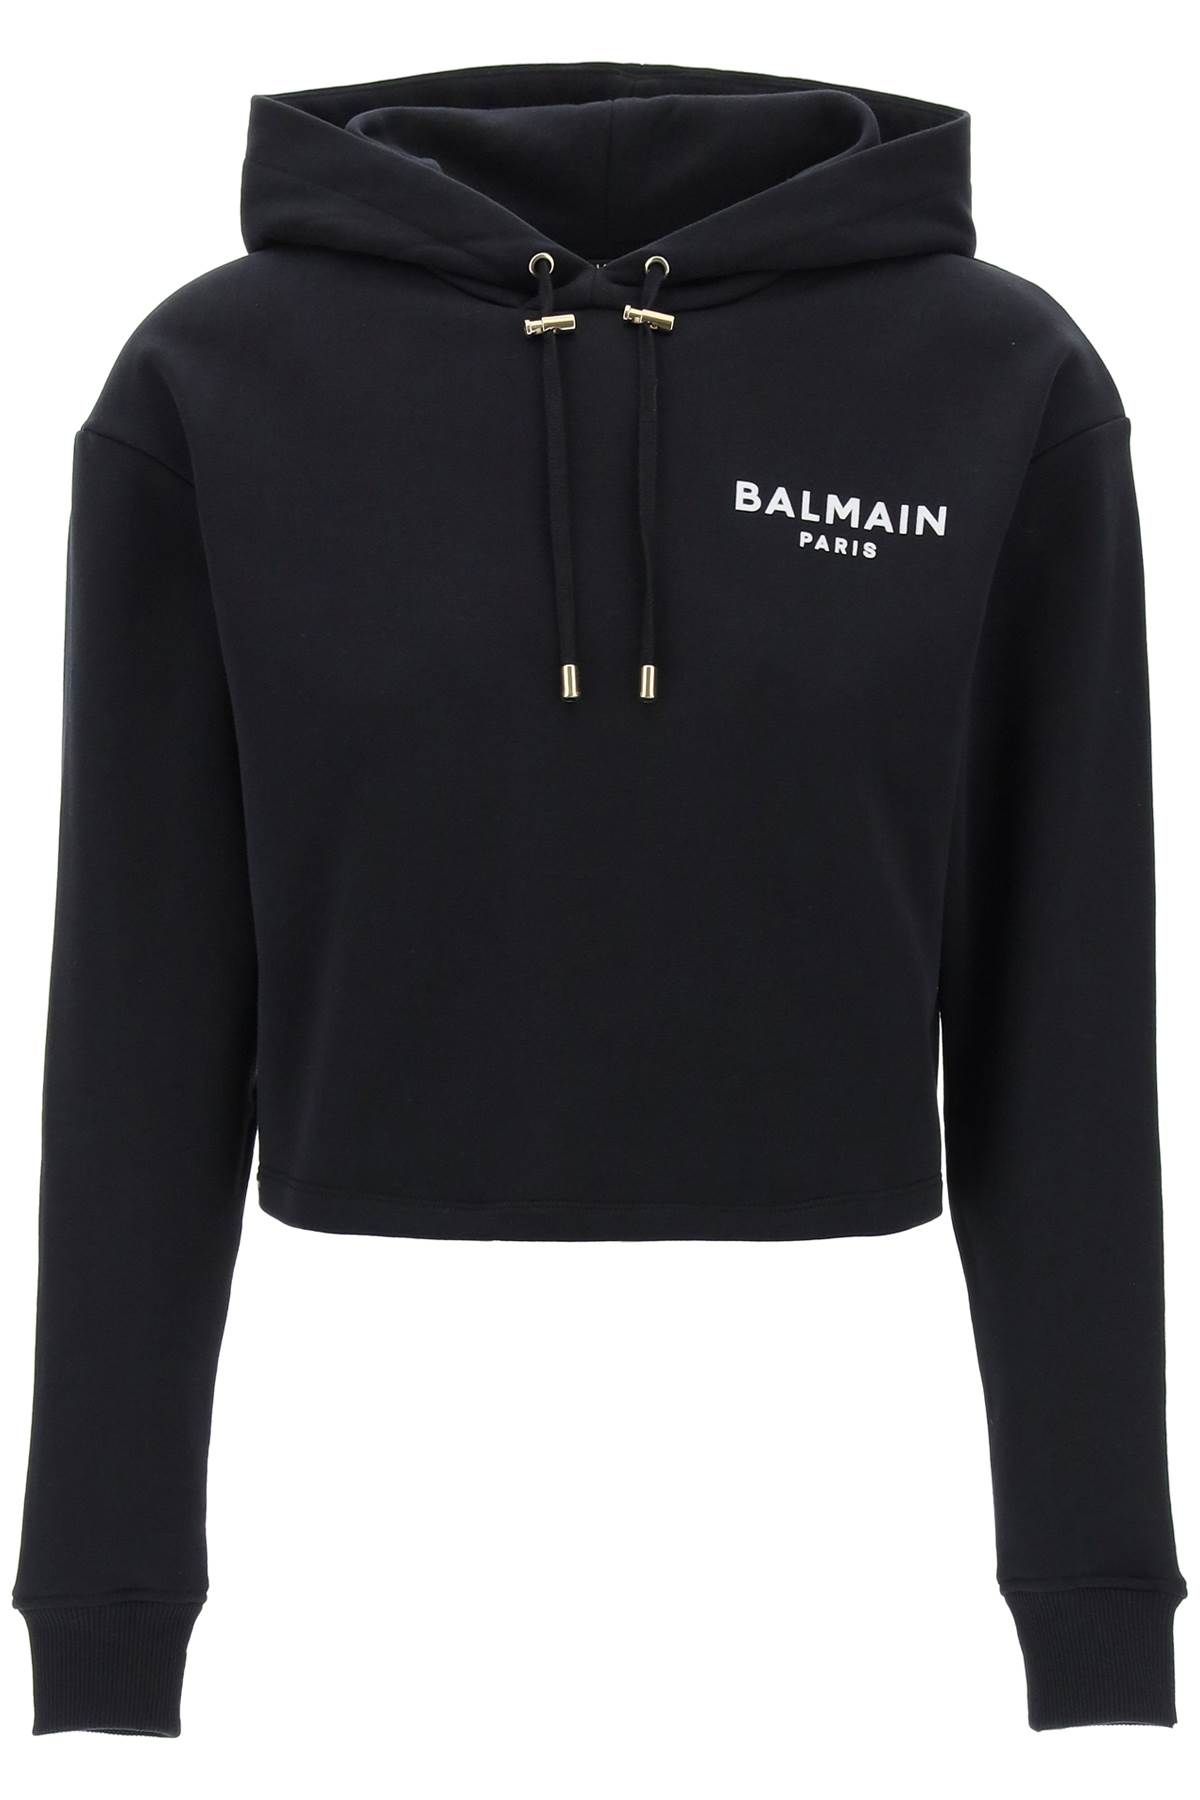 Balmain BALMAIN cropped hoodie with flocked logo